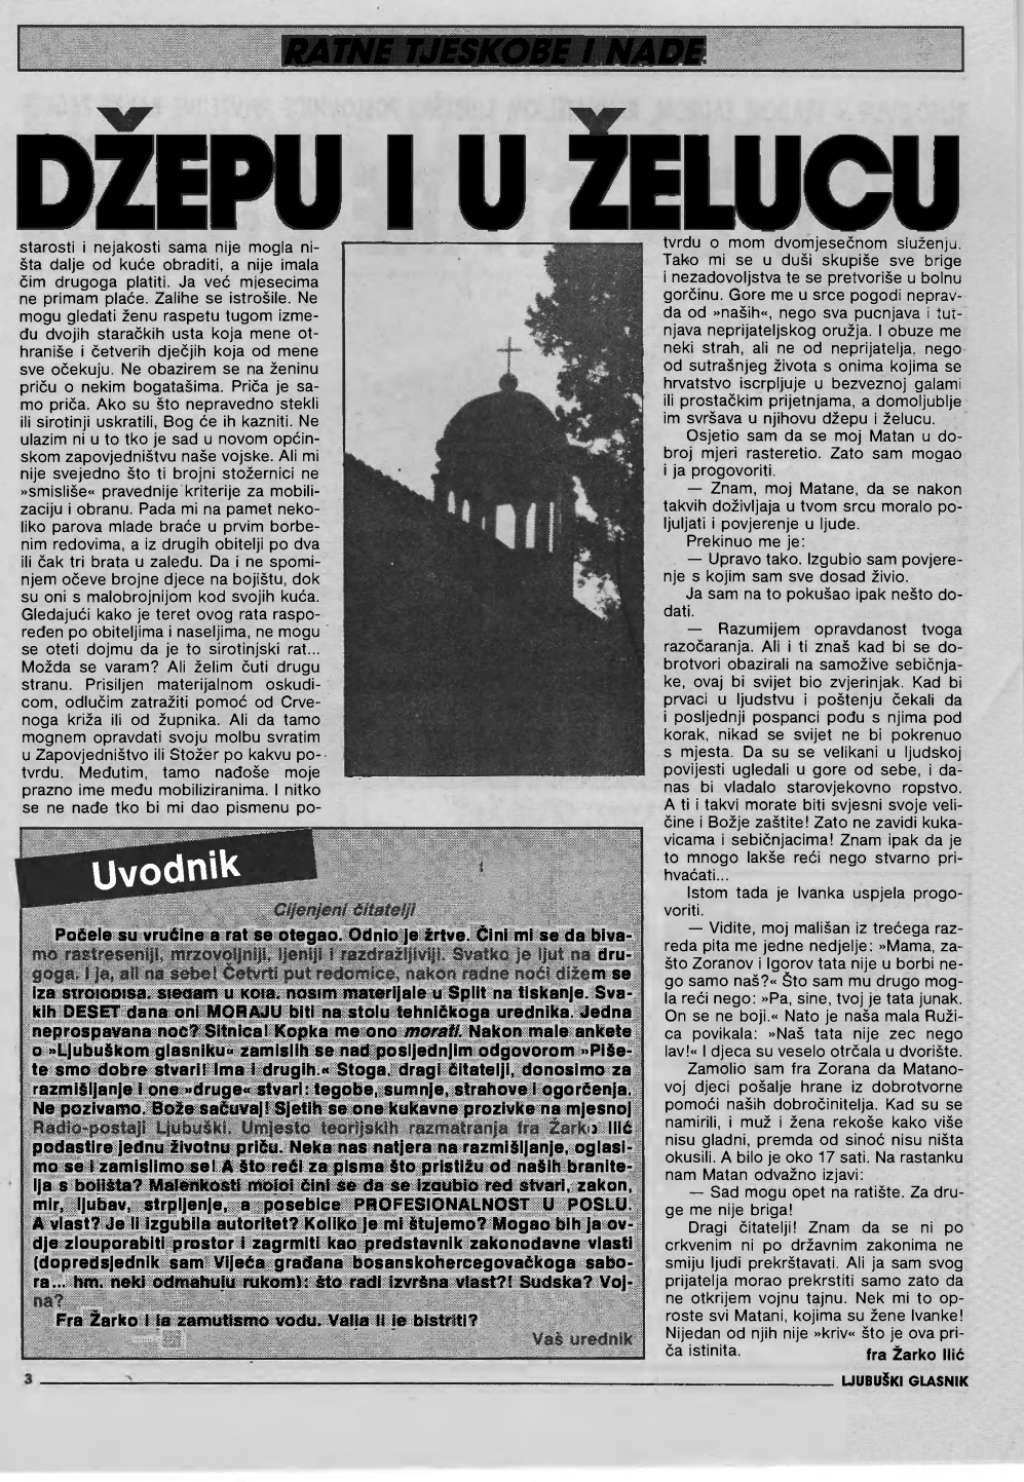 Donosimo: Ljubuški glasnik - broj 4., 05. lipnja 1992. godine